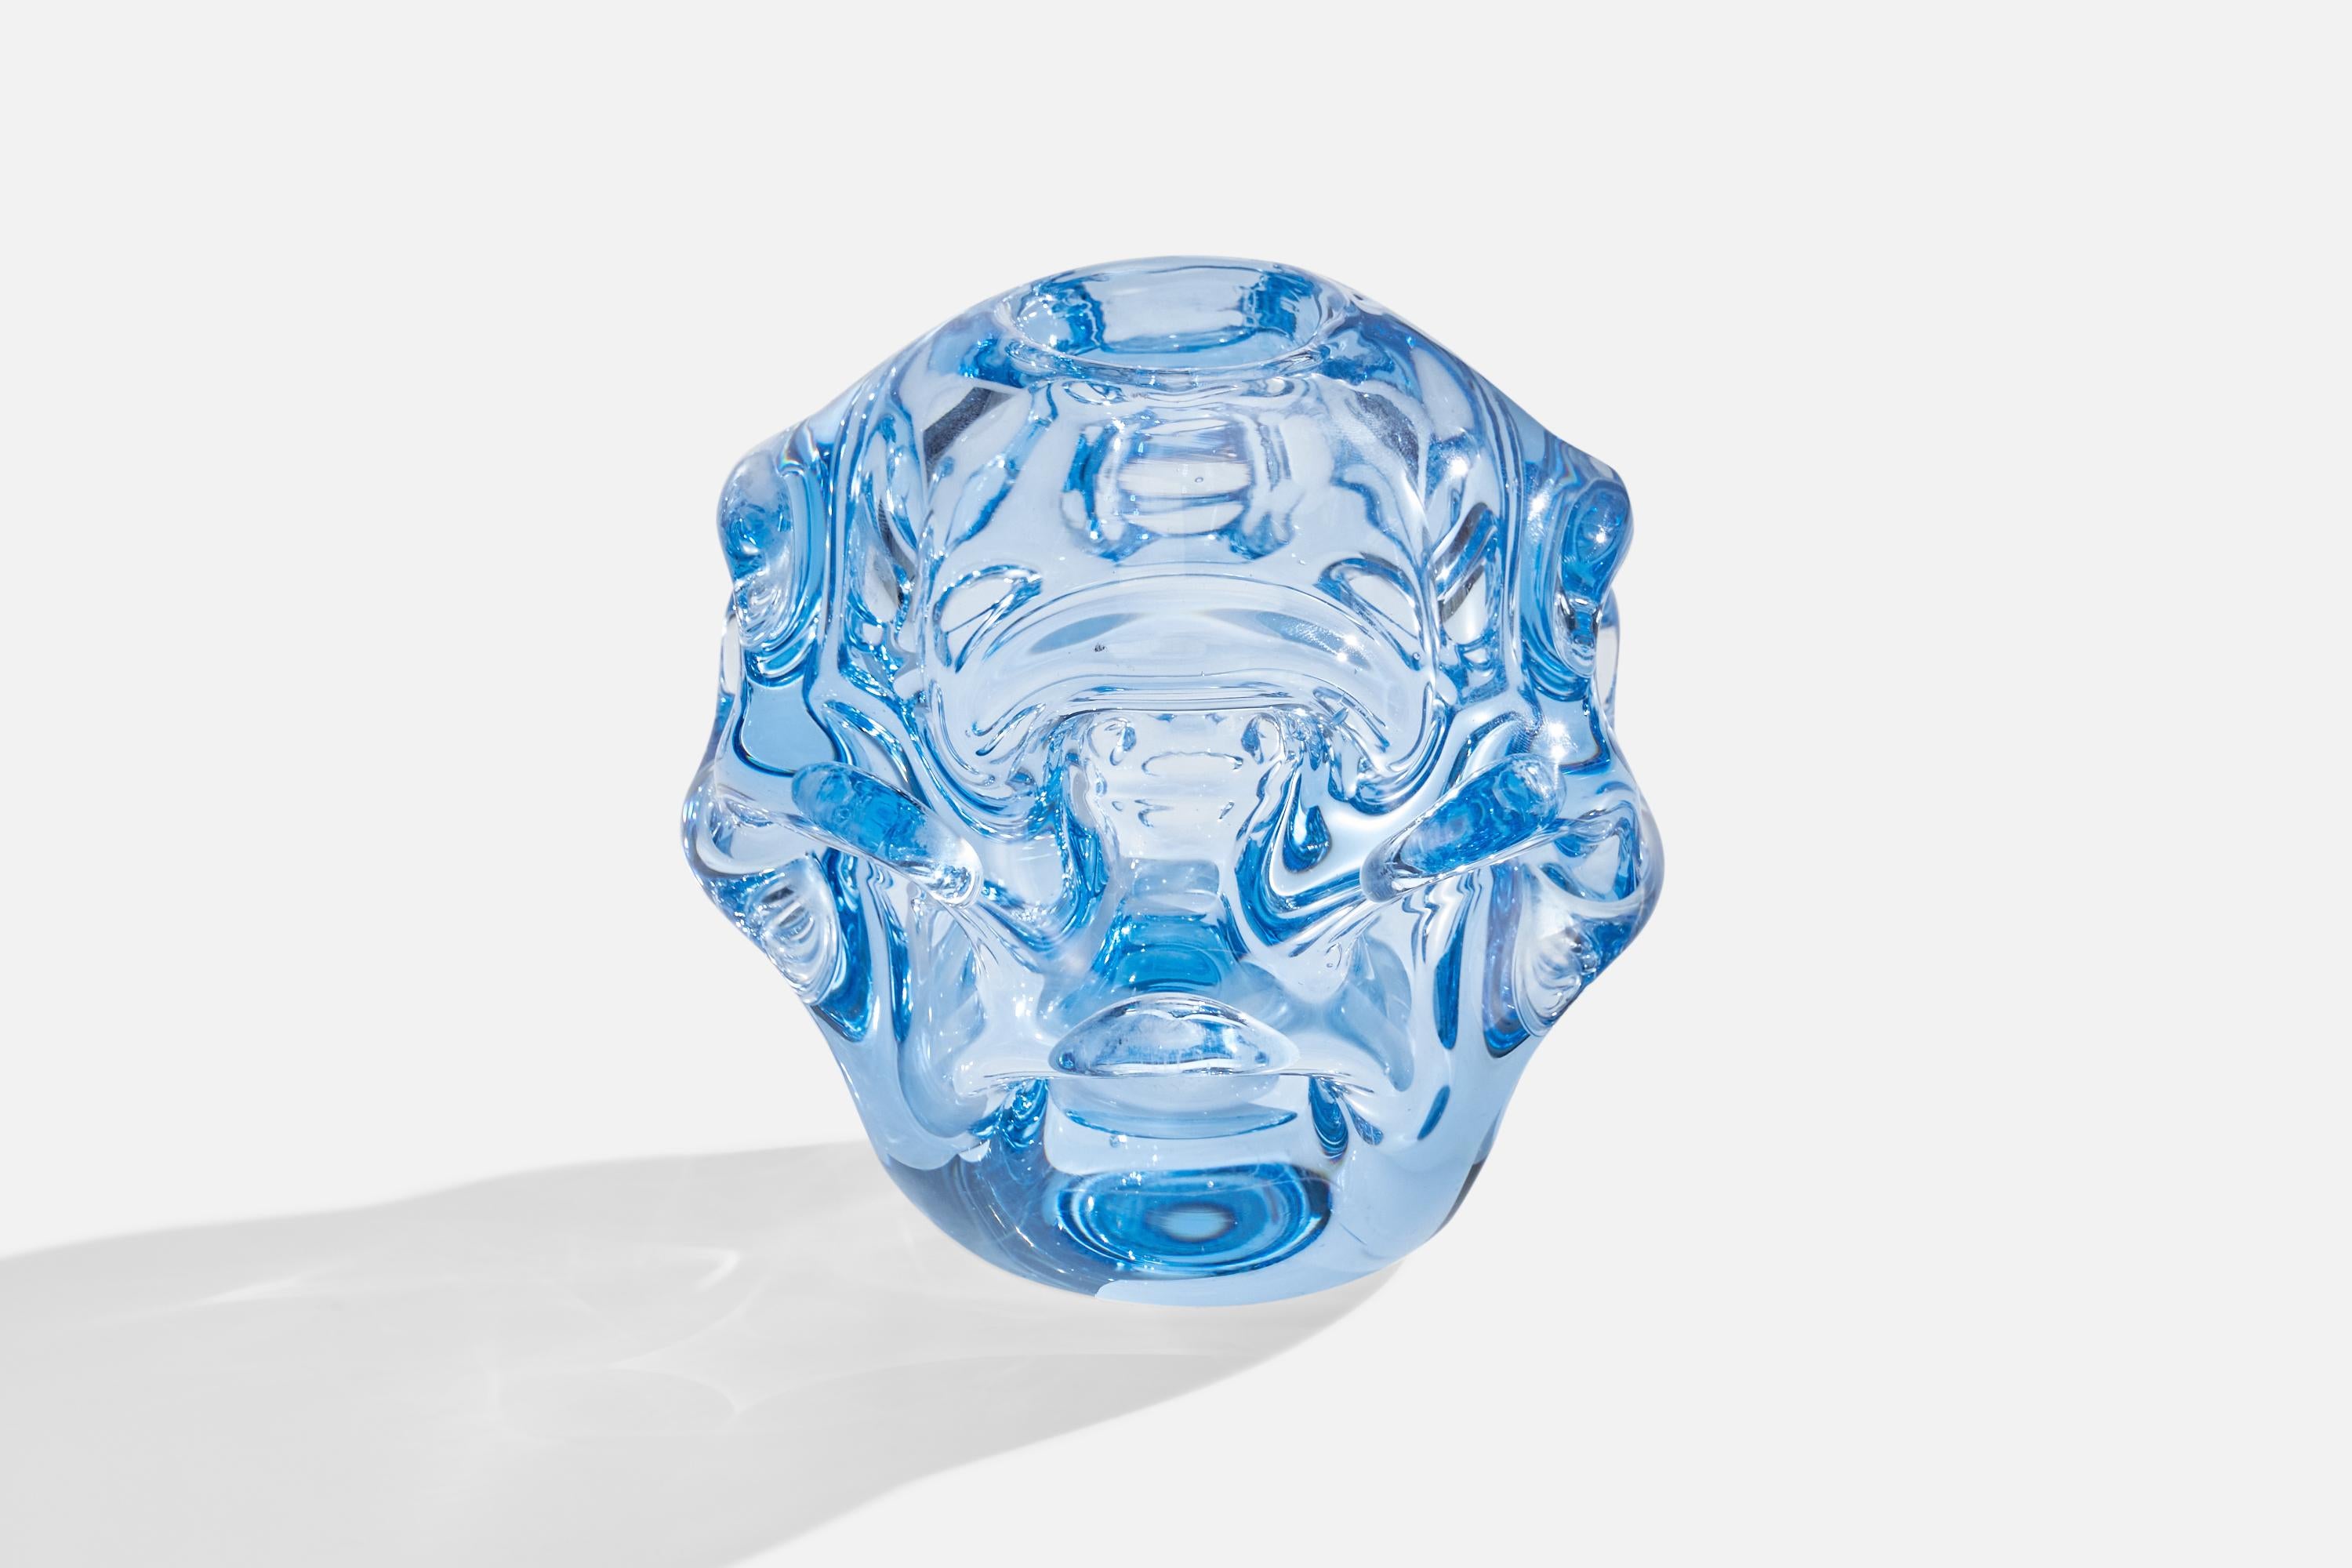 Vase organique en verre soufflé bleu conçu par Börne Augustsson et produit par Åseda Glasbruk, Suède, c. 1940s.